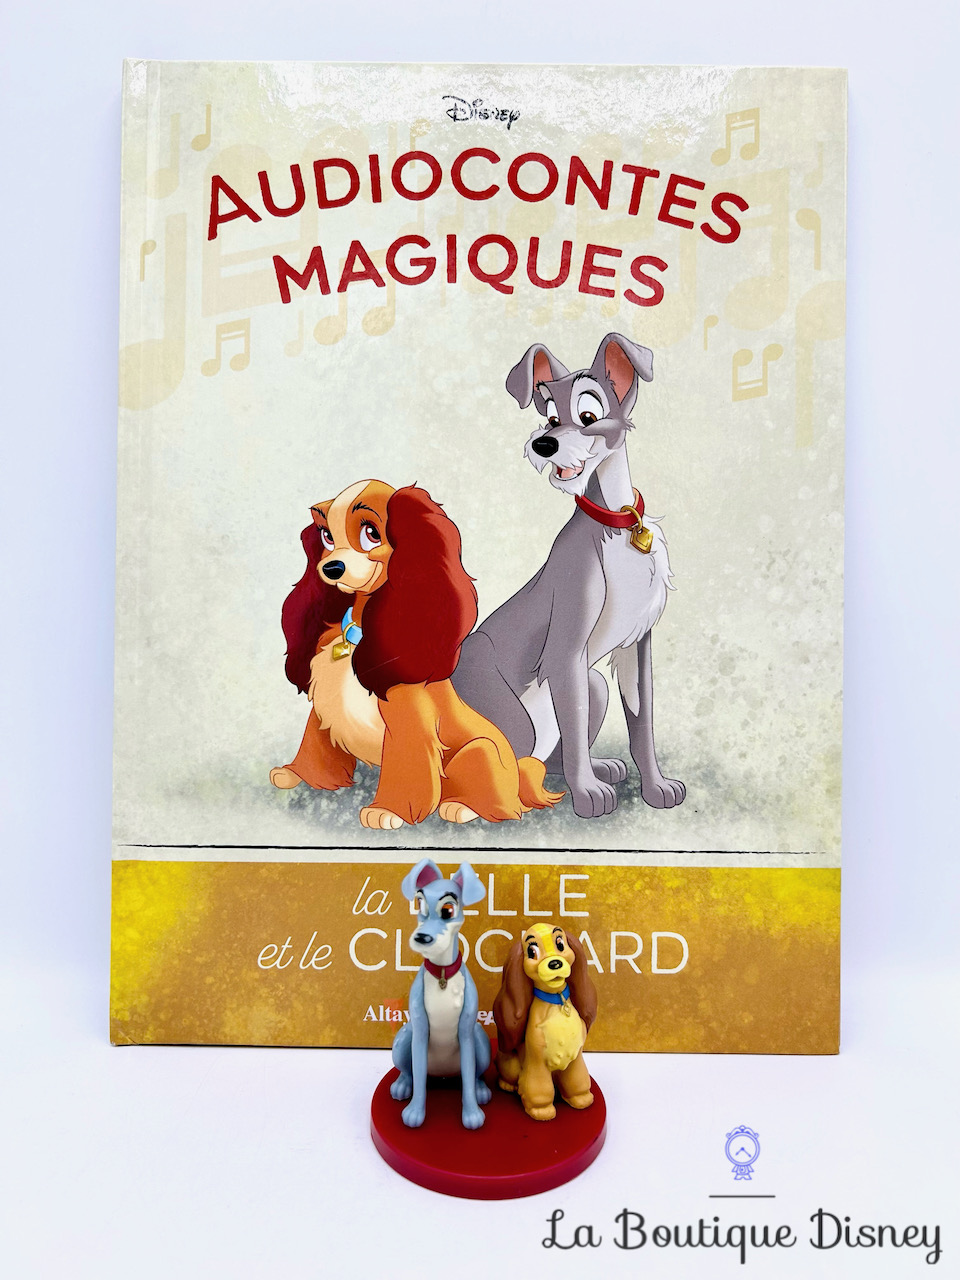 Livre Audiocontes Magiques La Belle et le Clochard Disney Altaya encyclopédie figurine